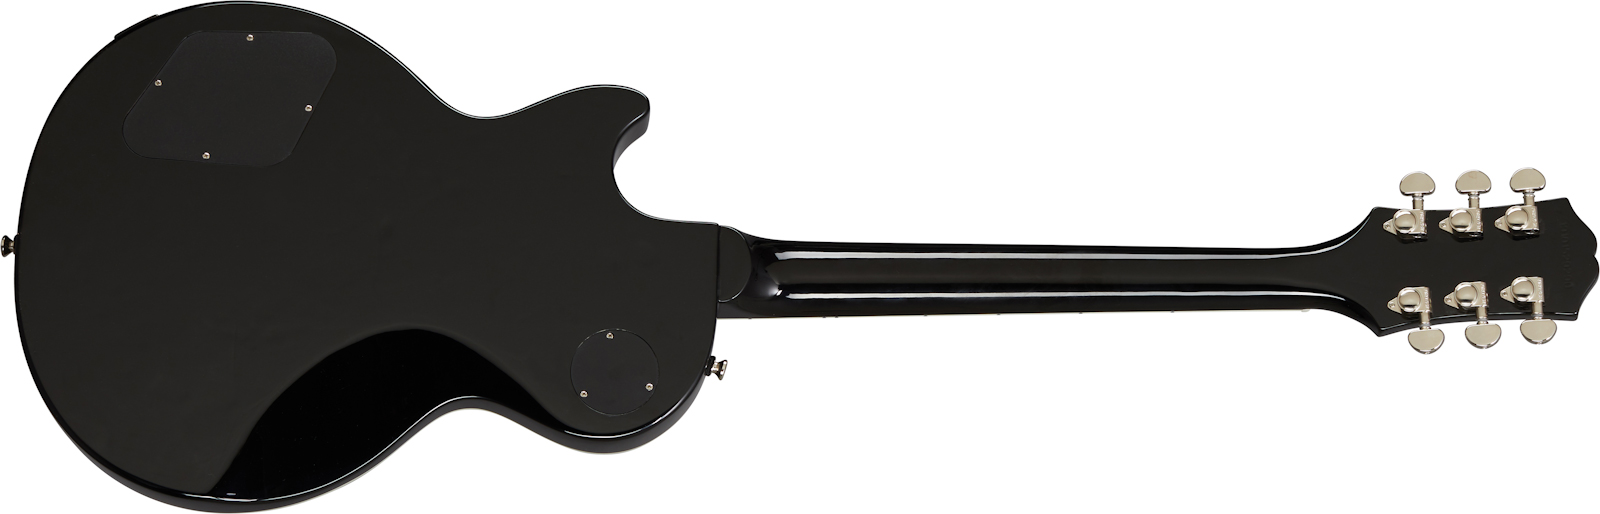 Epiphone Les Paul Muse Modern 2h Ht Lau - Pearl White Metallic - Guitare Électrique Single Cut - Variation 2